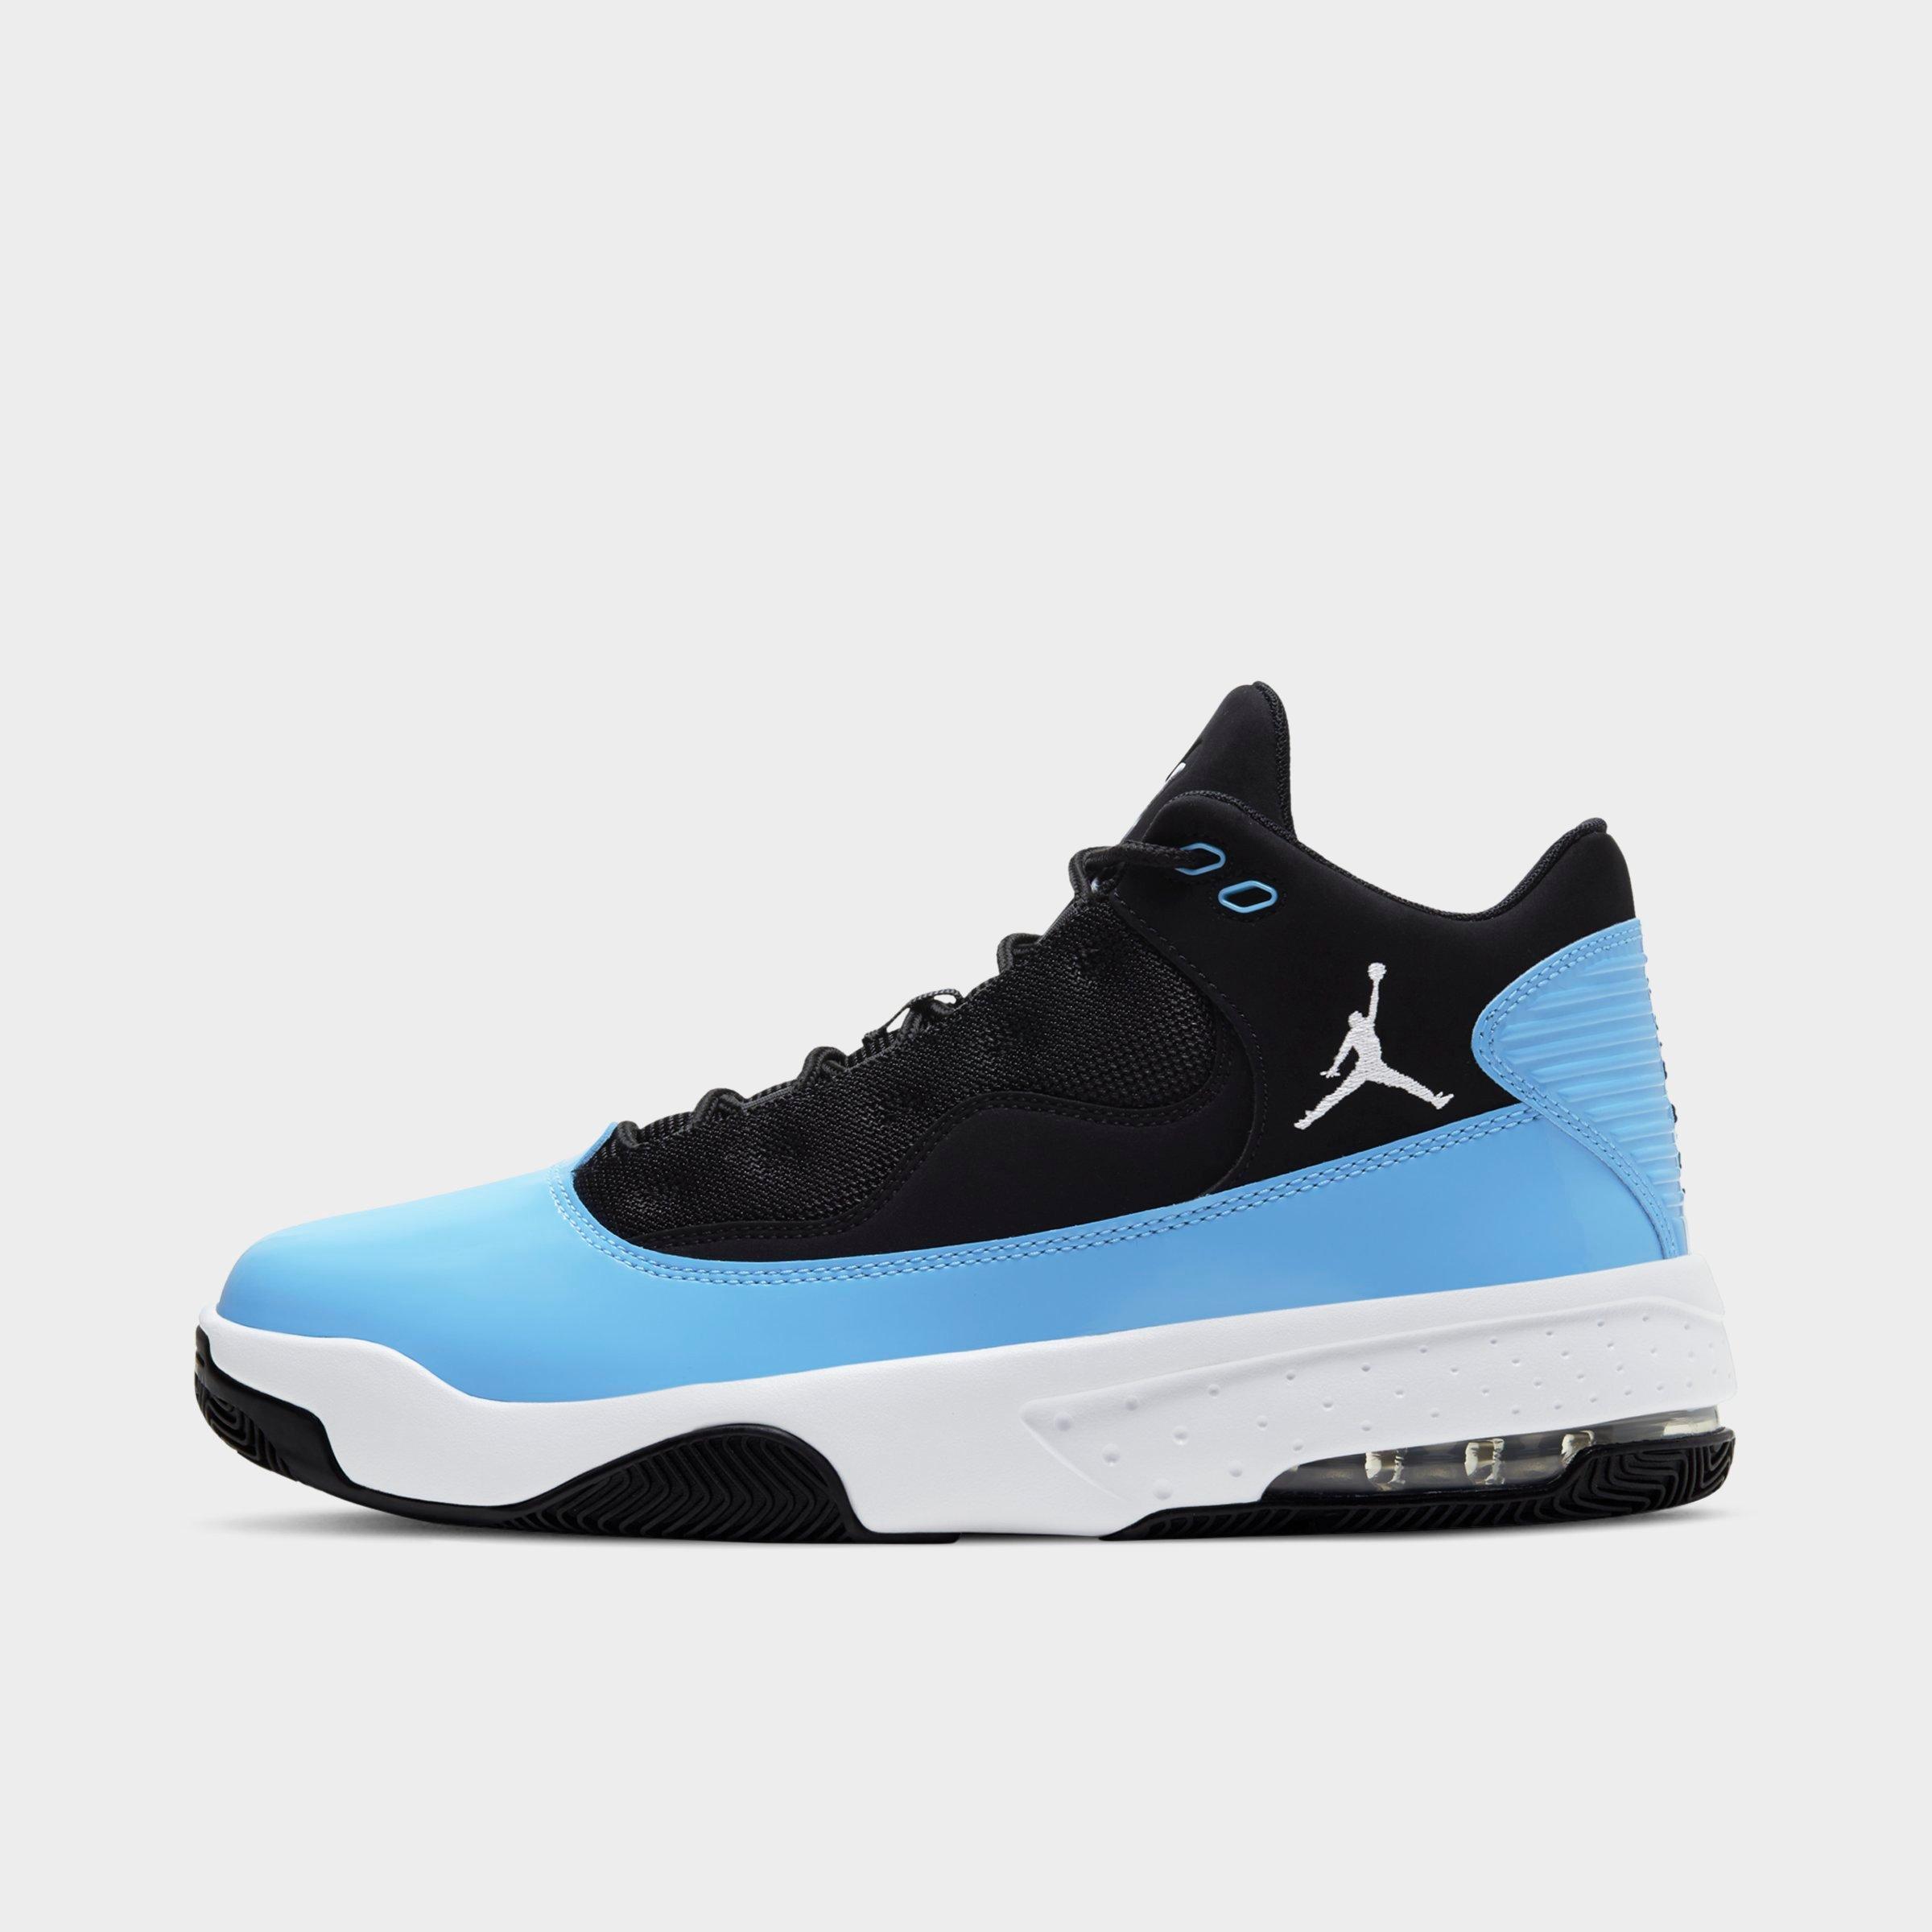 New Jordan Shoes | Air Jordan New 